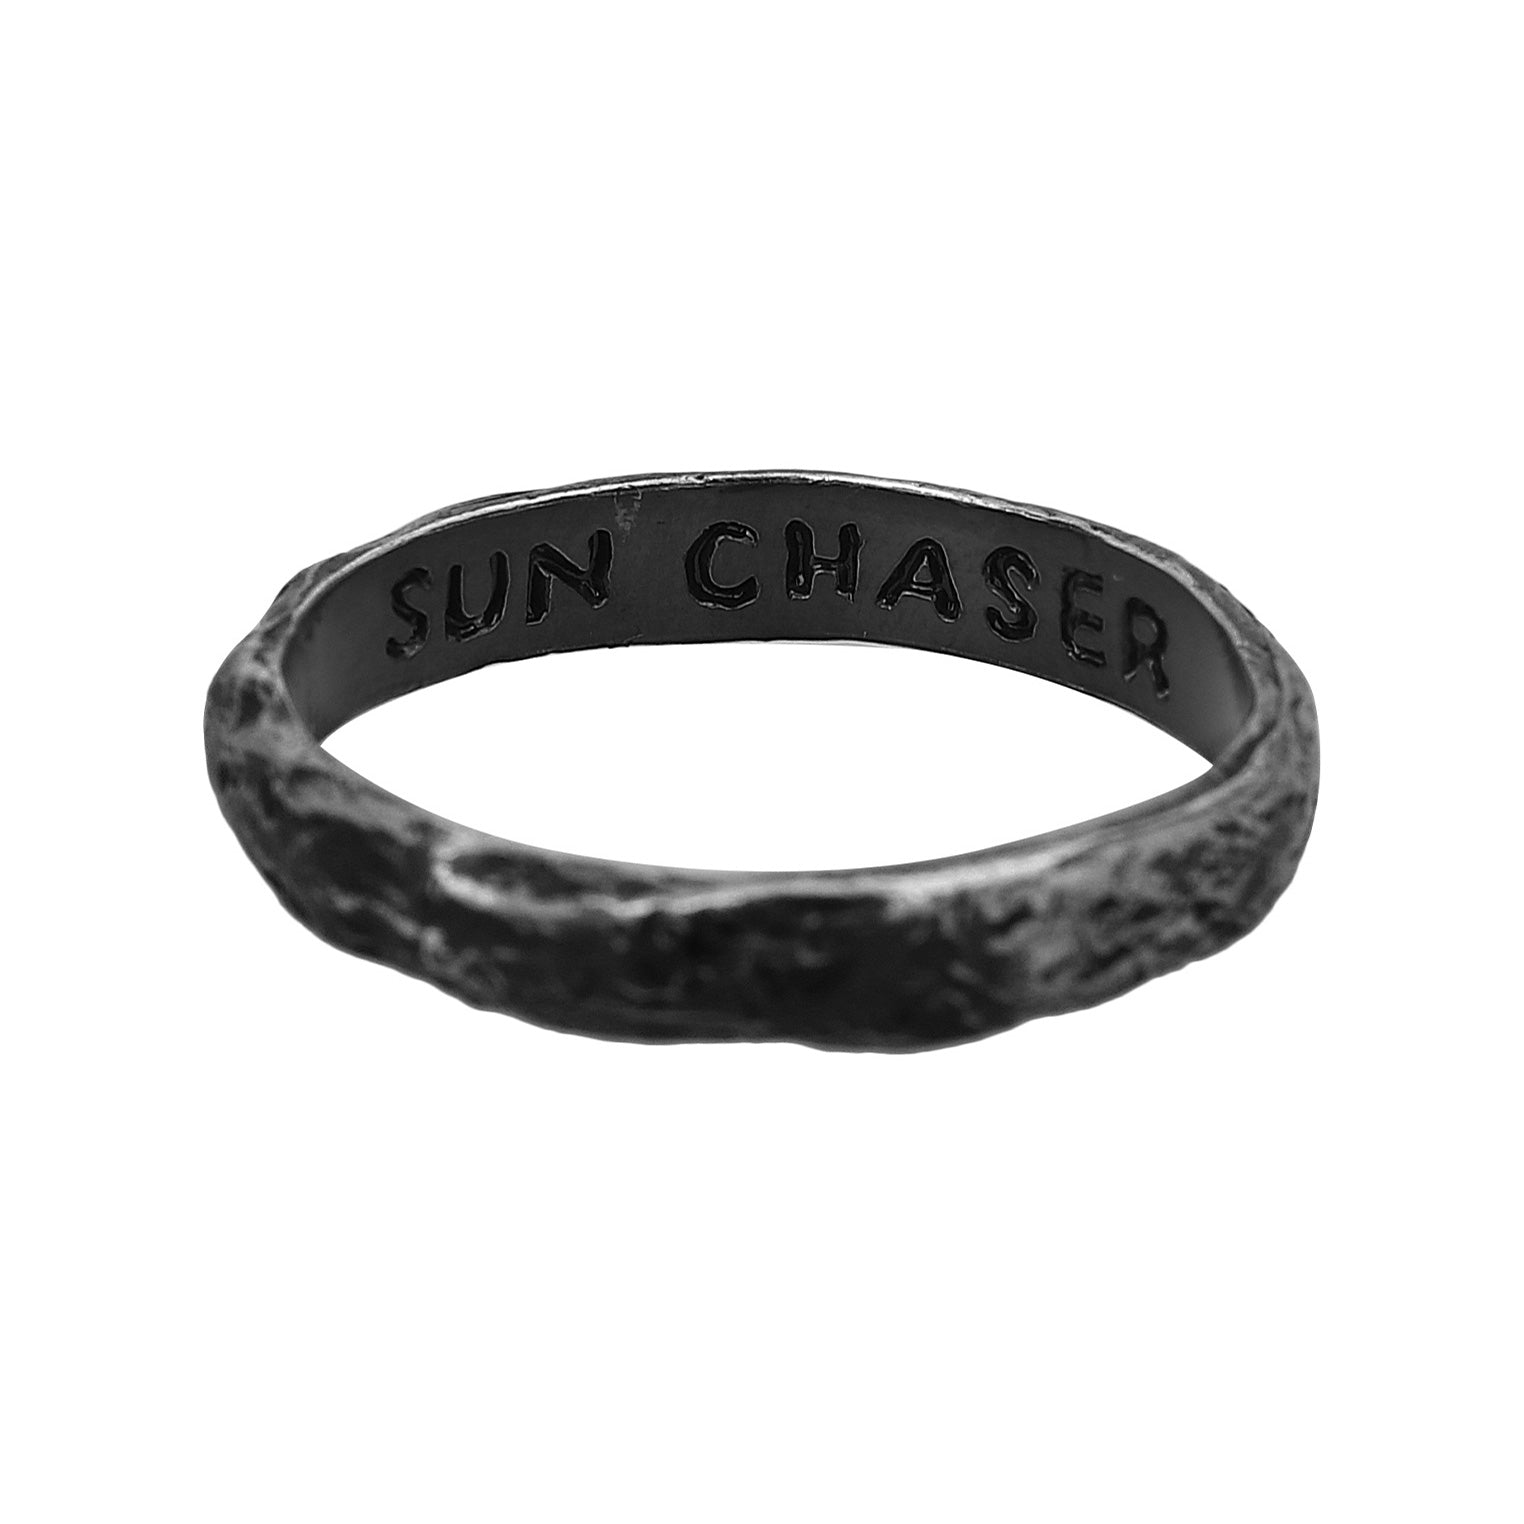 Schwarz - HAZE & GLORY | Sun Chaser Ring, dark finish